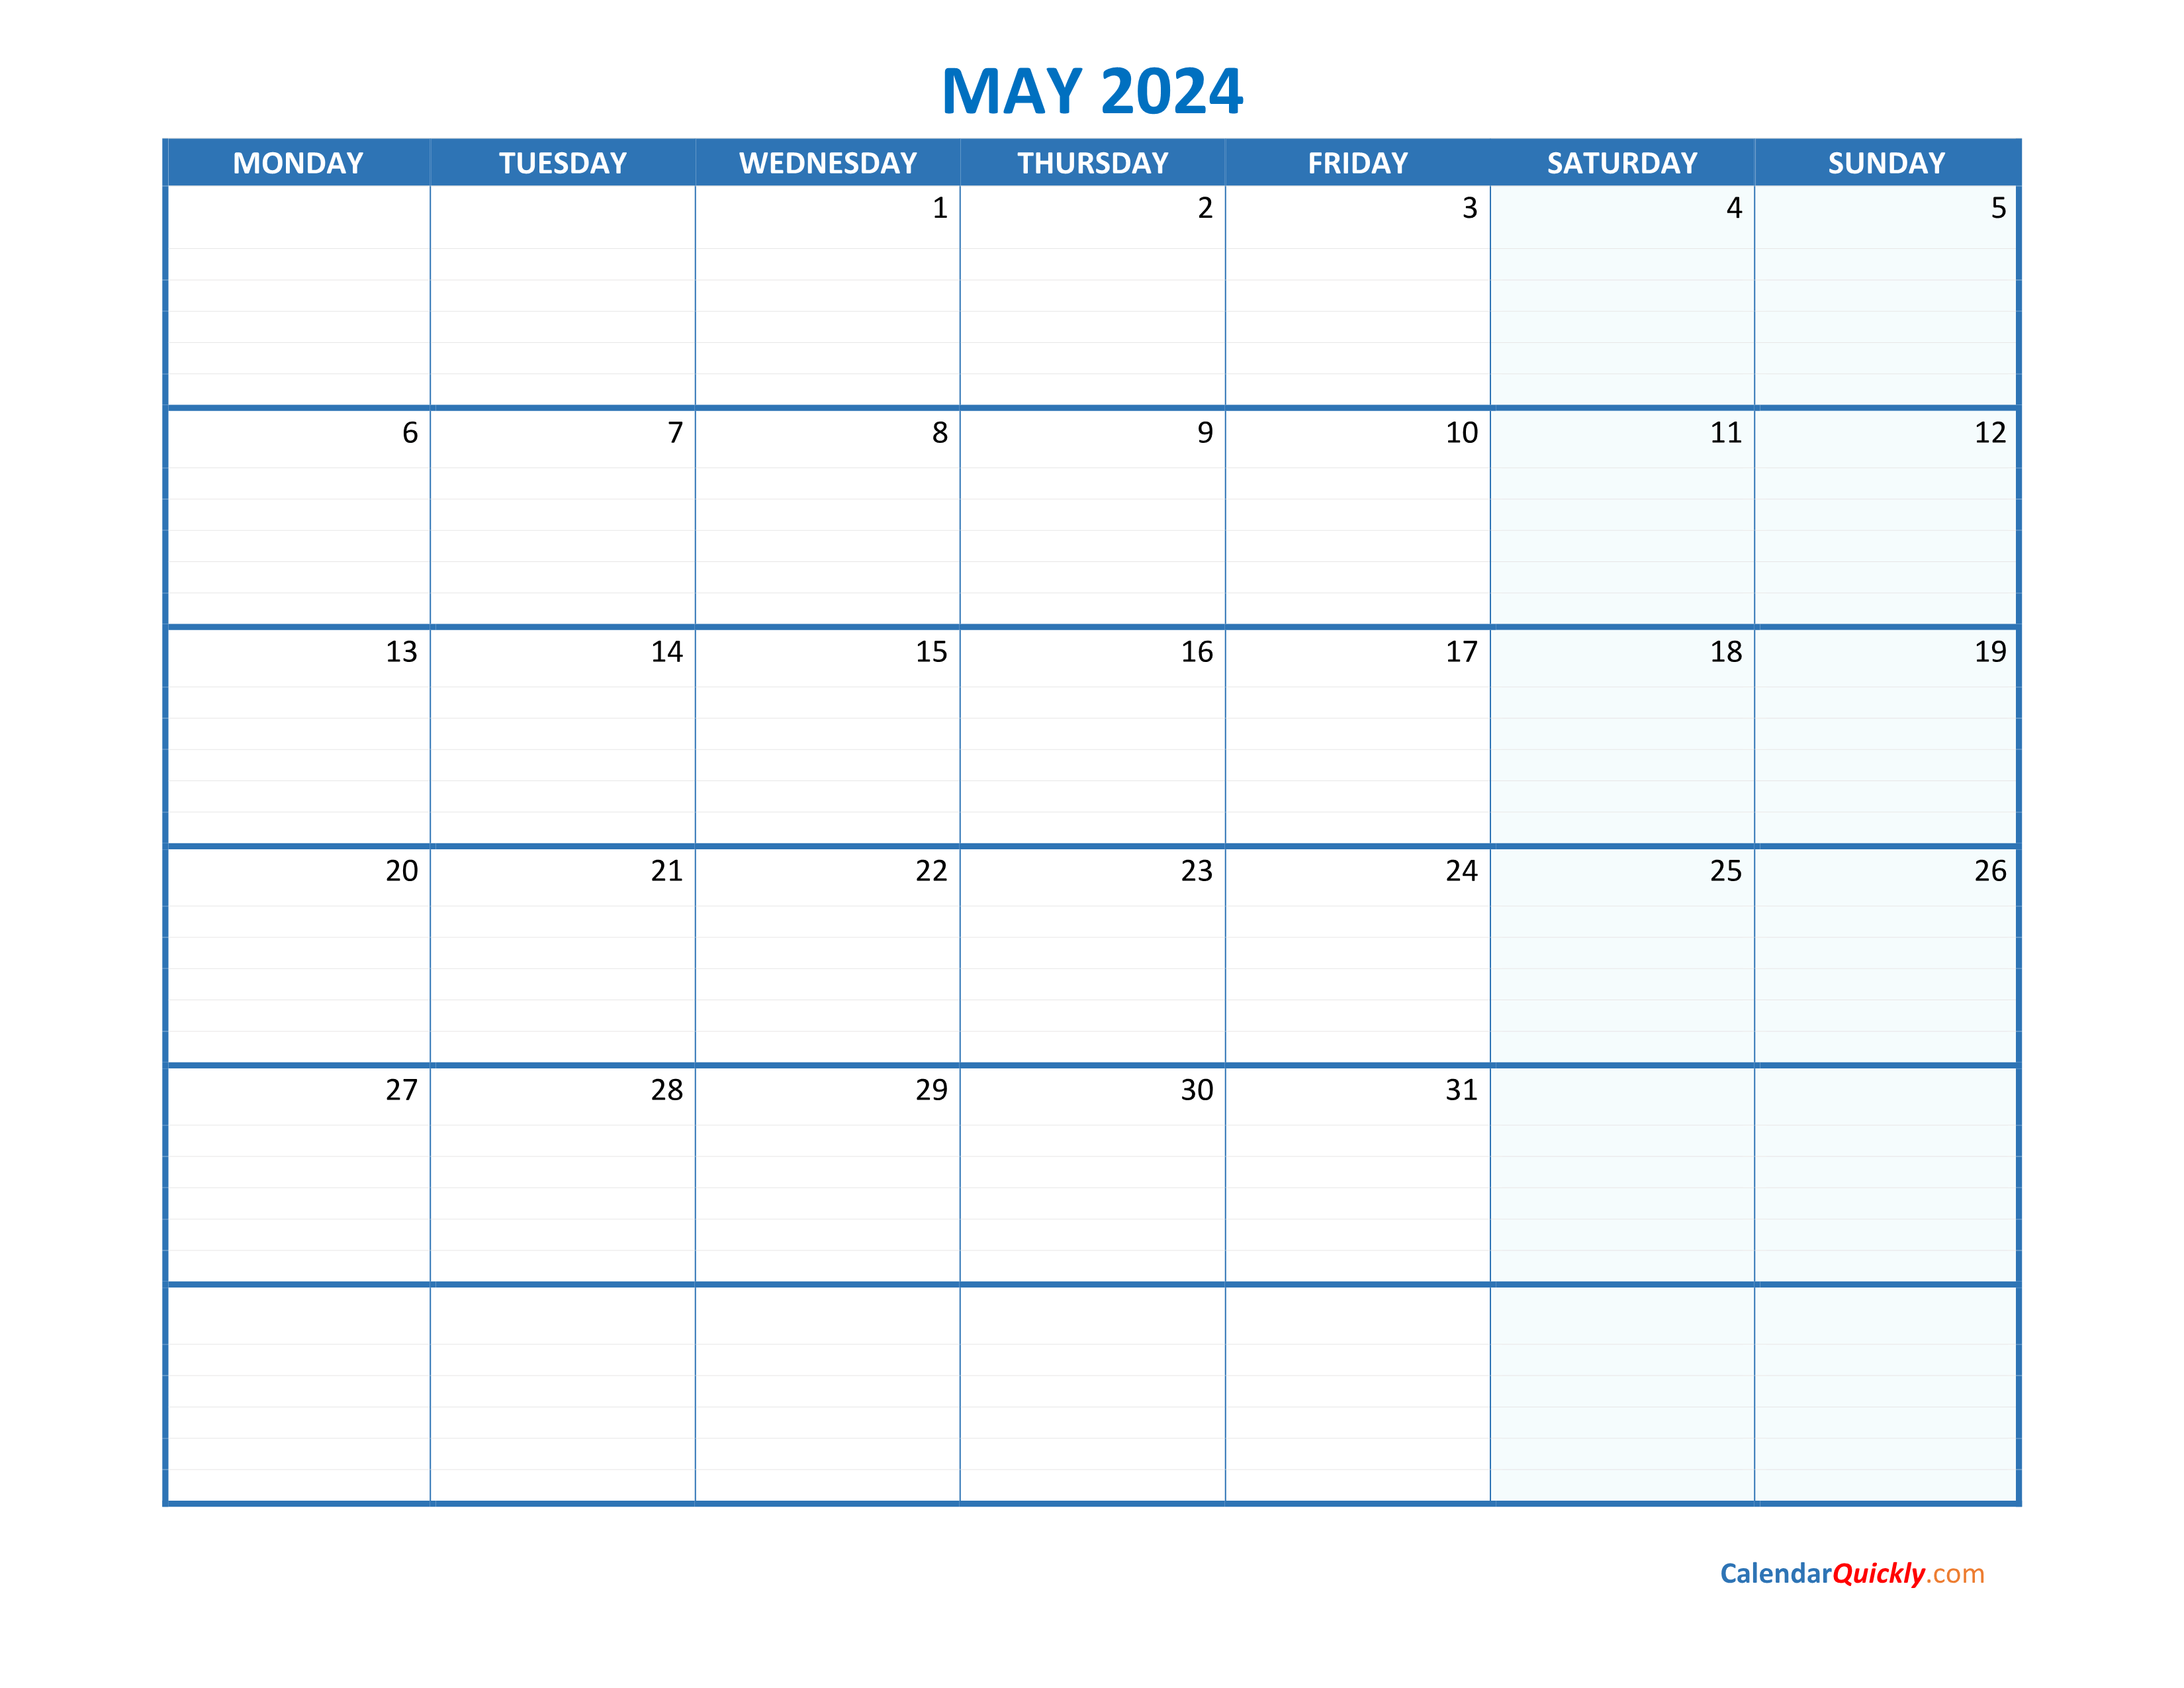 May Monday 2024 Blank Calendar  Calendar Quickly